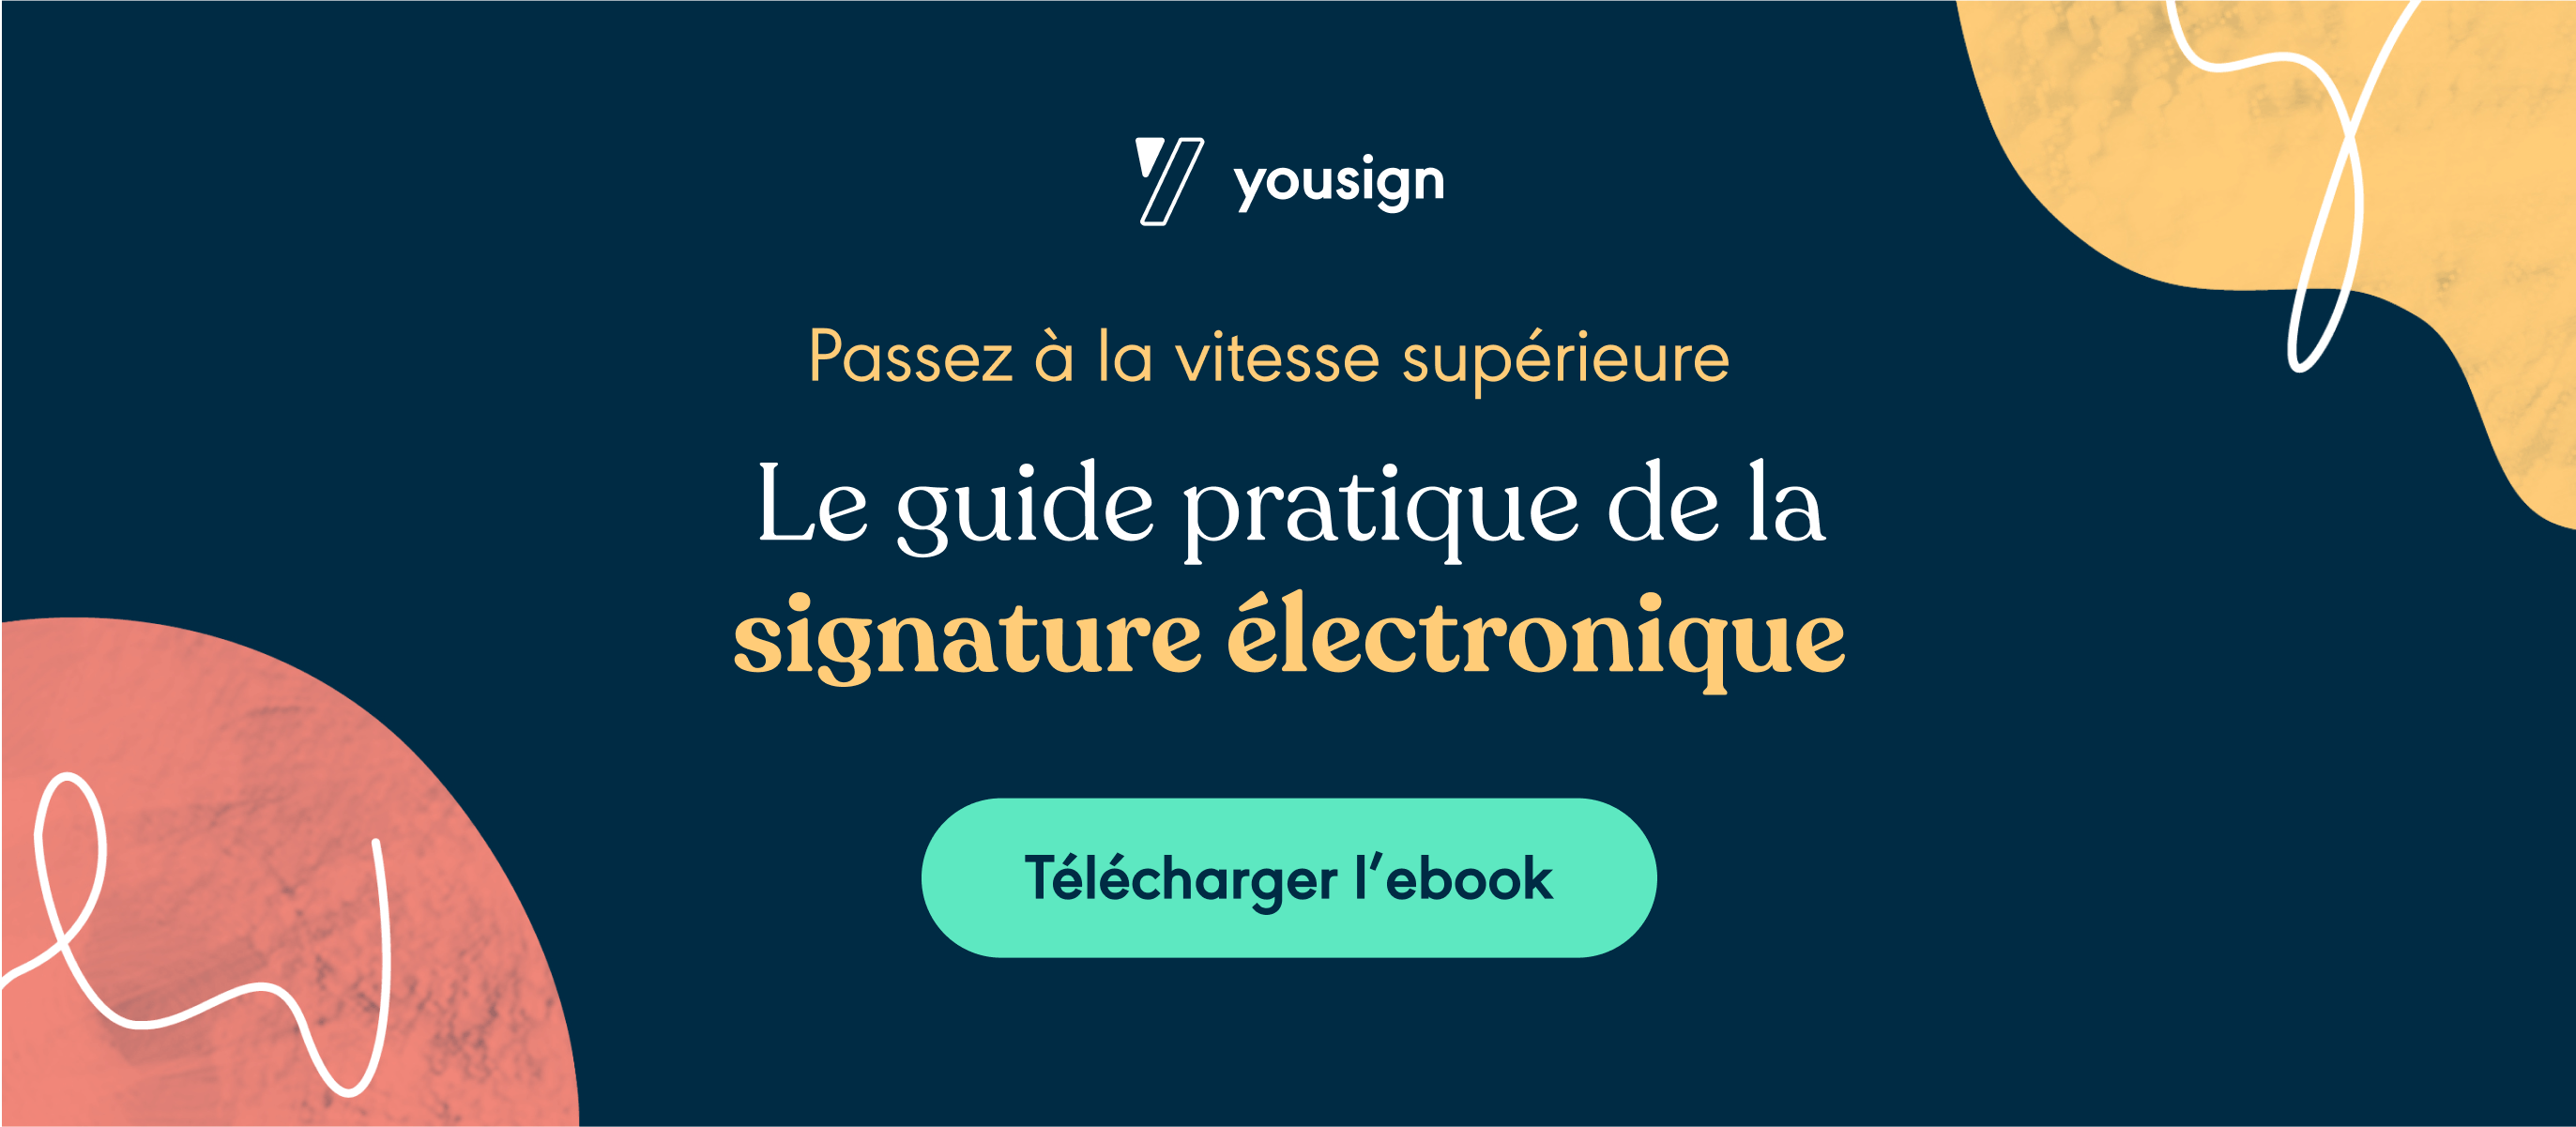 Guide pratique signature électronique 